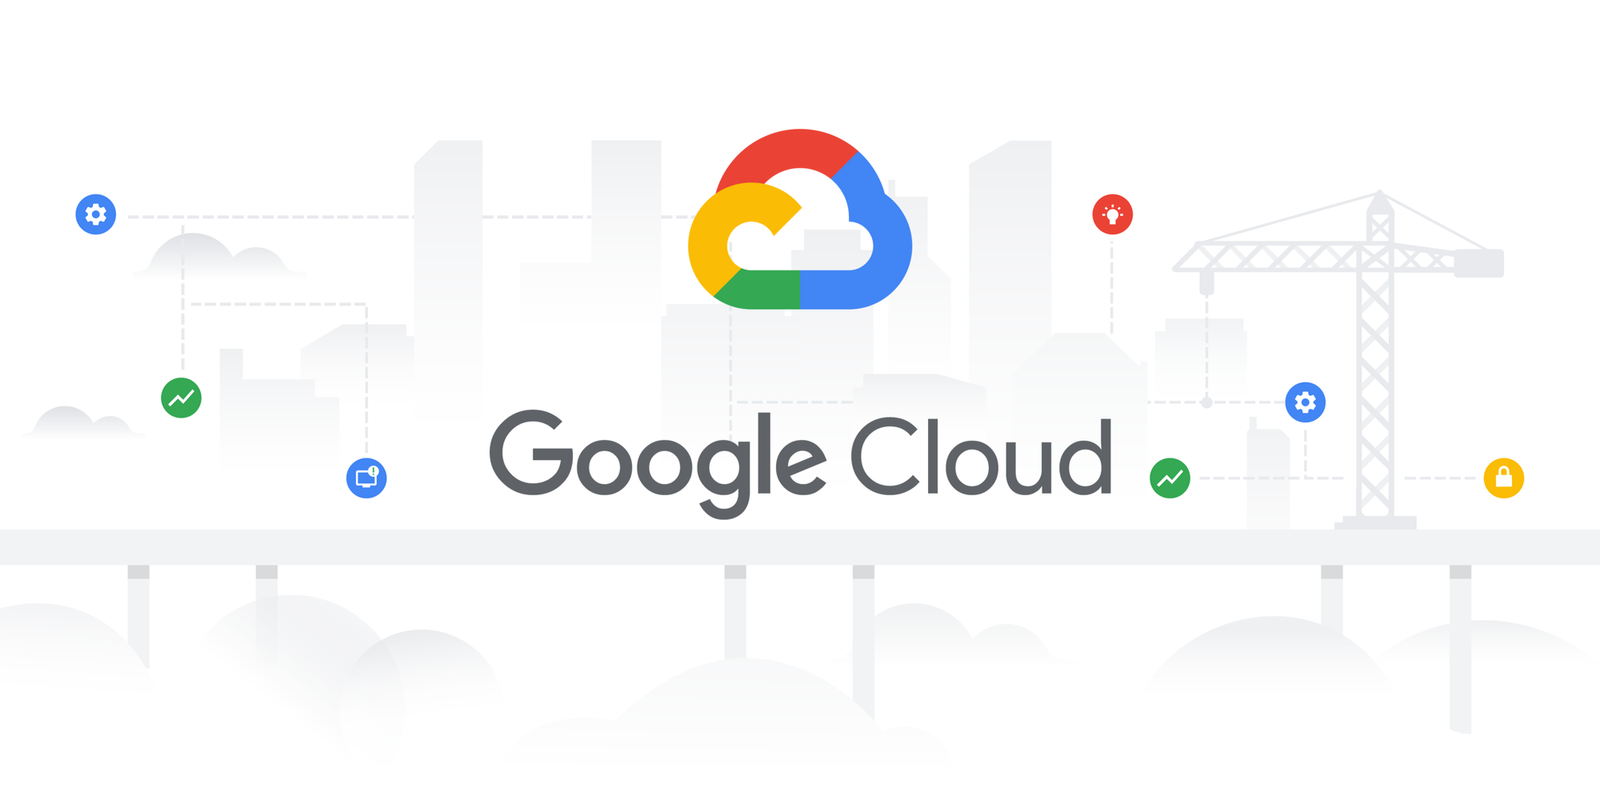 SRE keeps digging to prevent problems | Google Cloud Blog